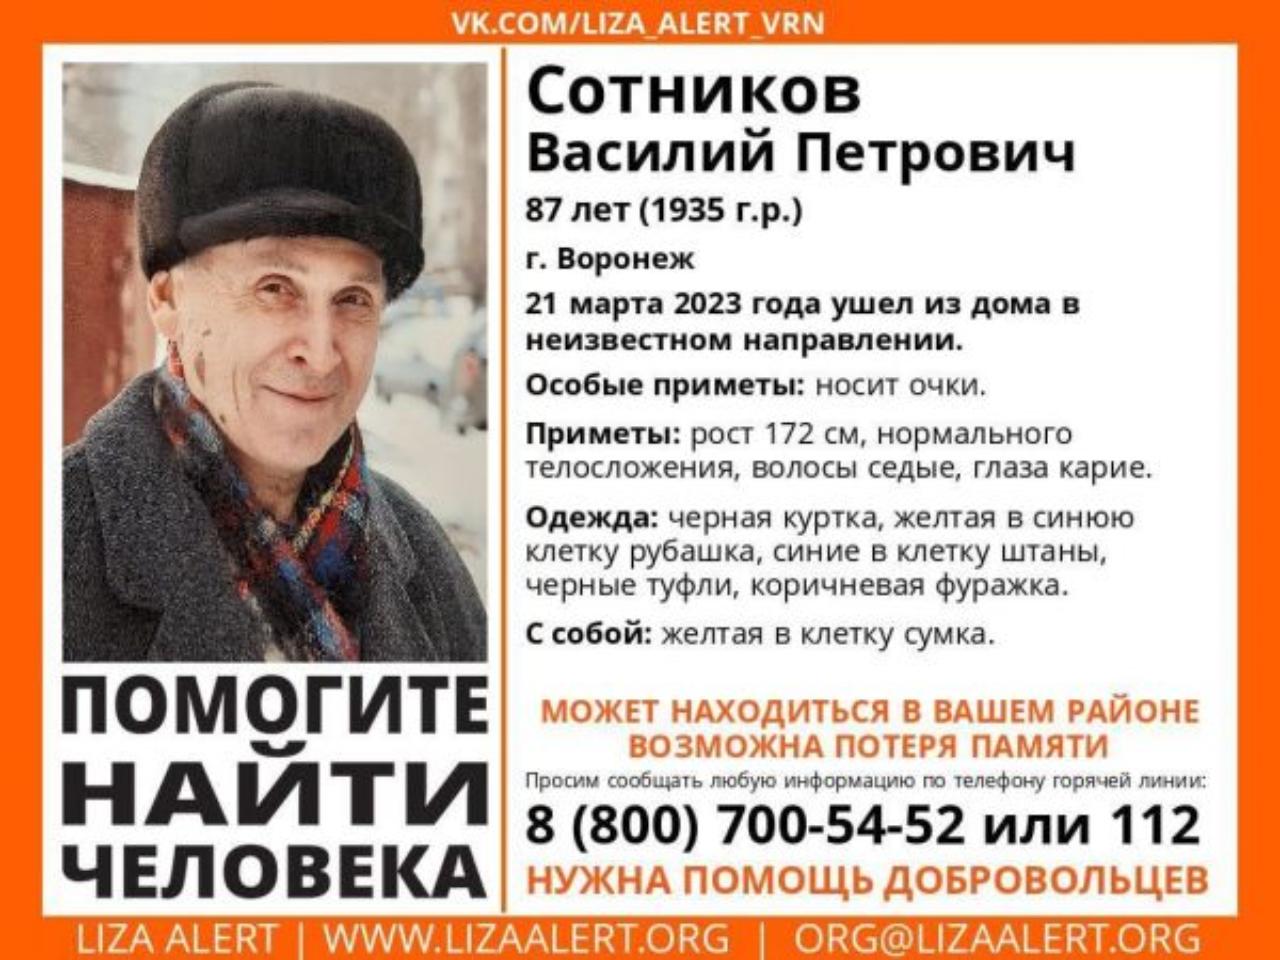 В Воронеже ищут пропавшего 87-летнего дедушку с провалами памяти